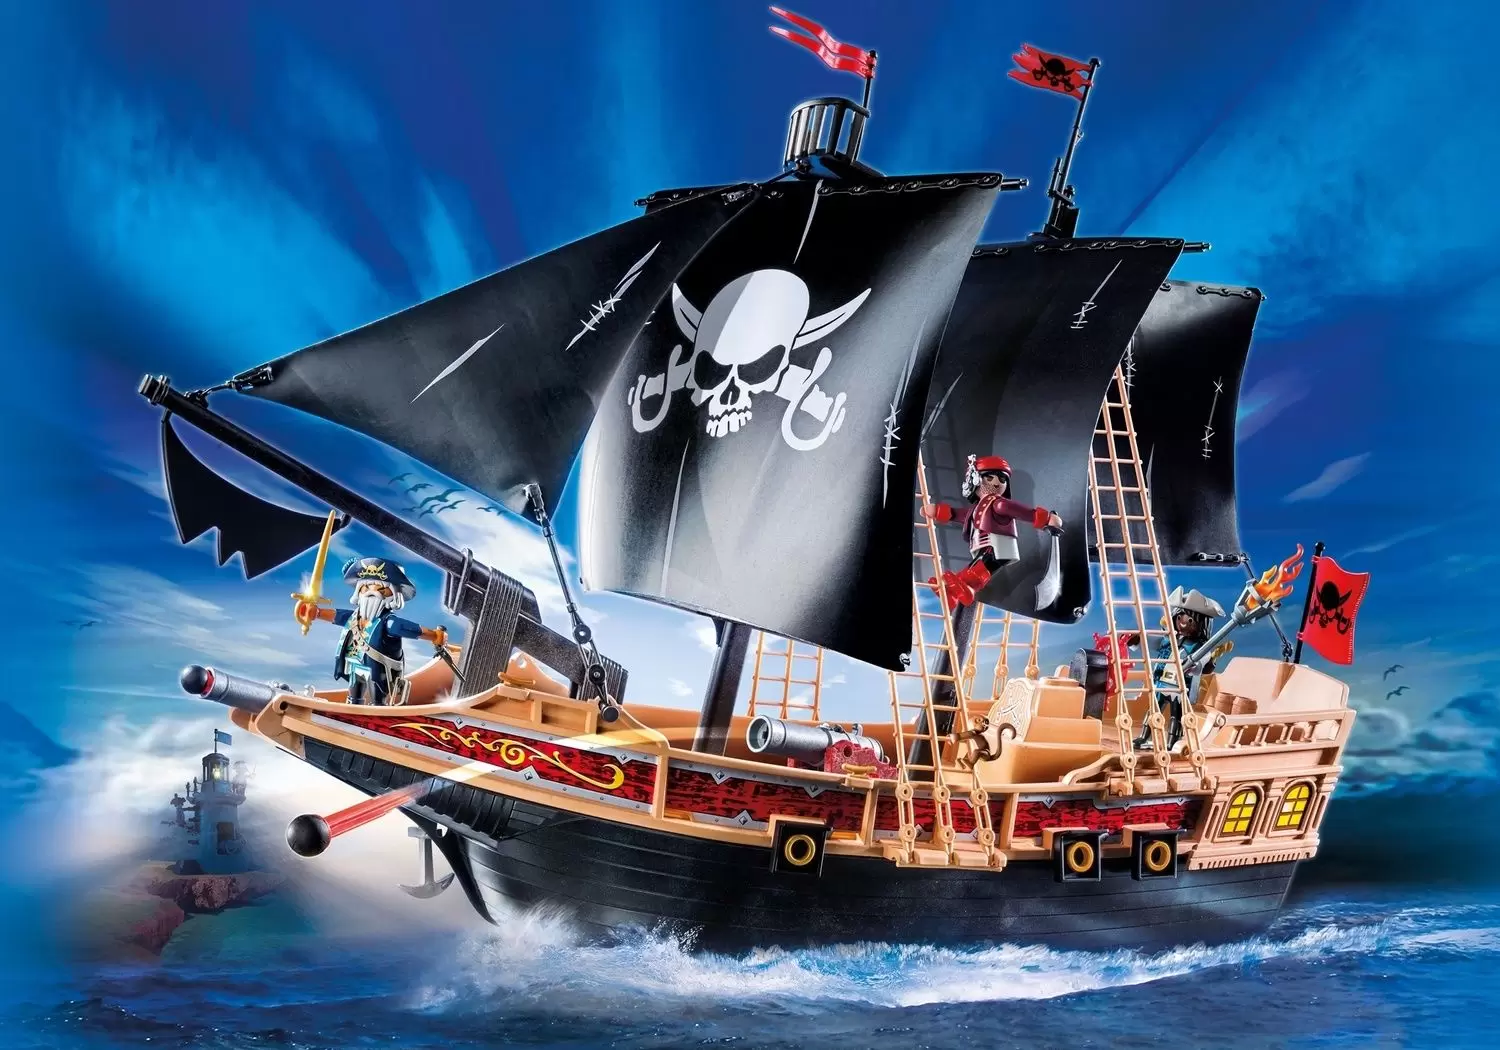 Pirate Raiders' Ship - Playmobil